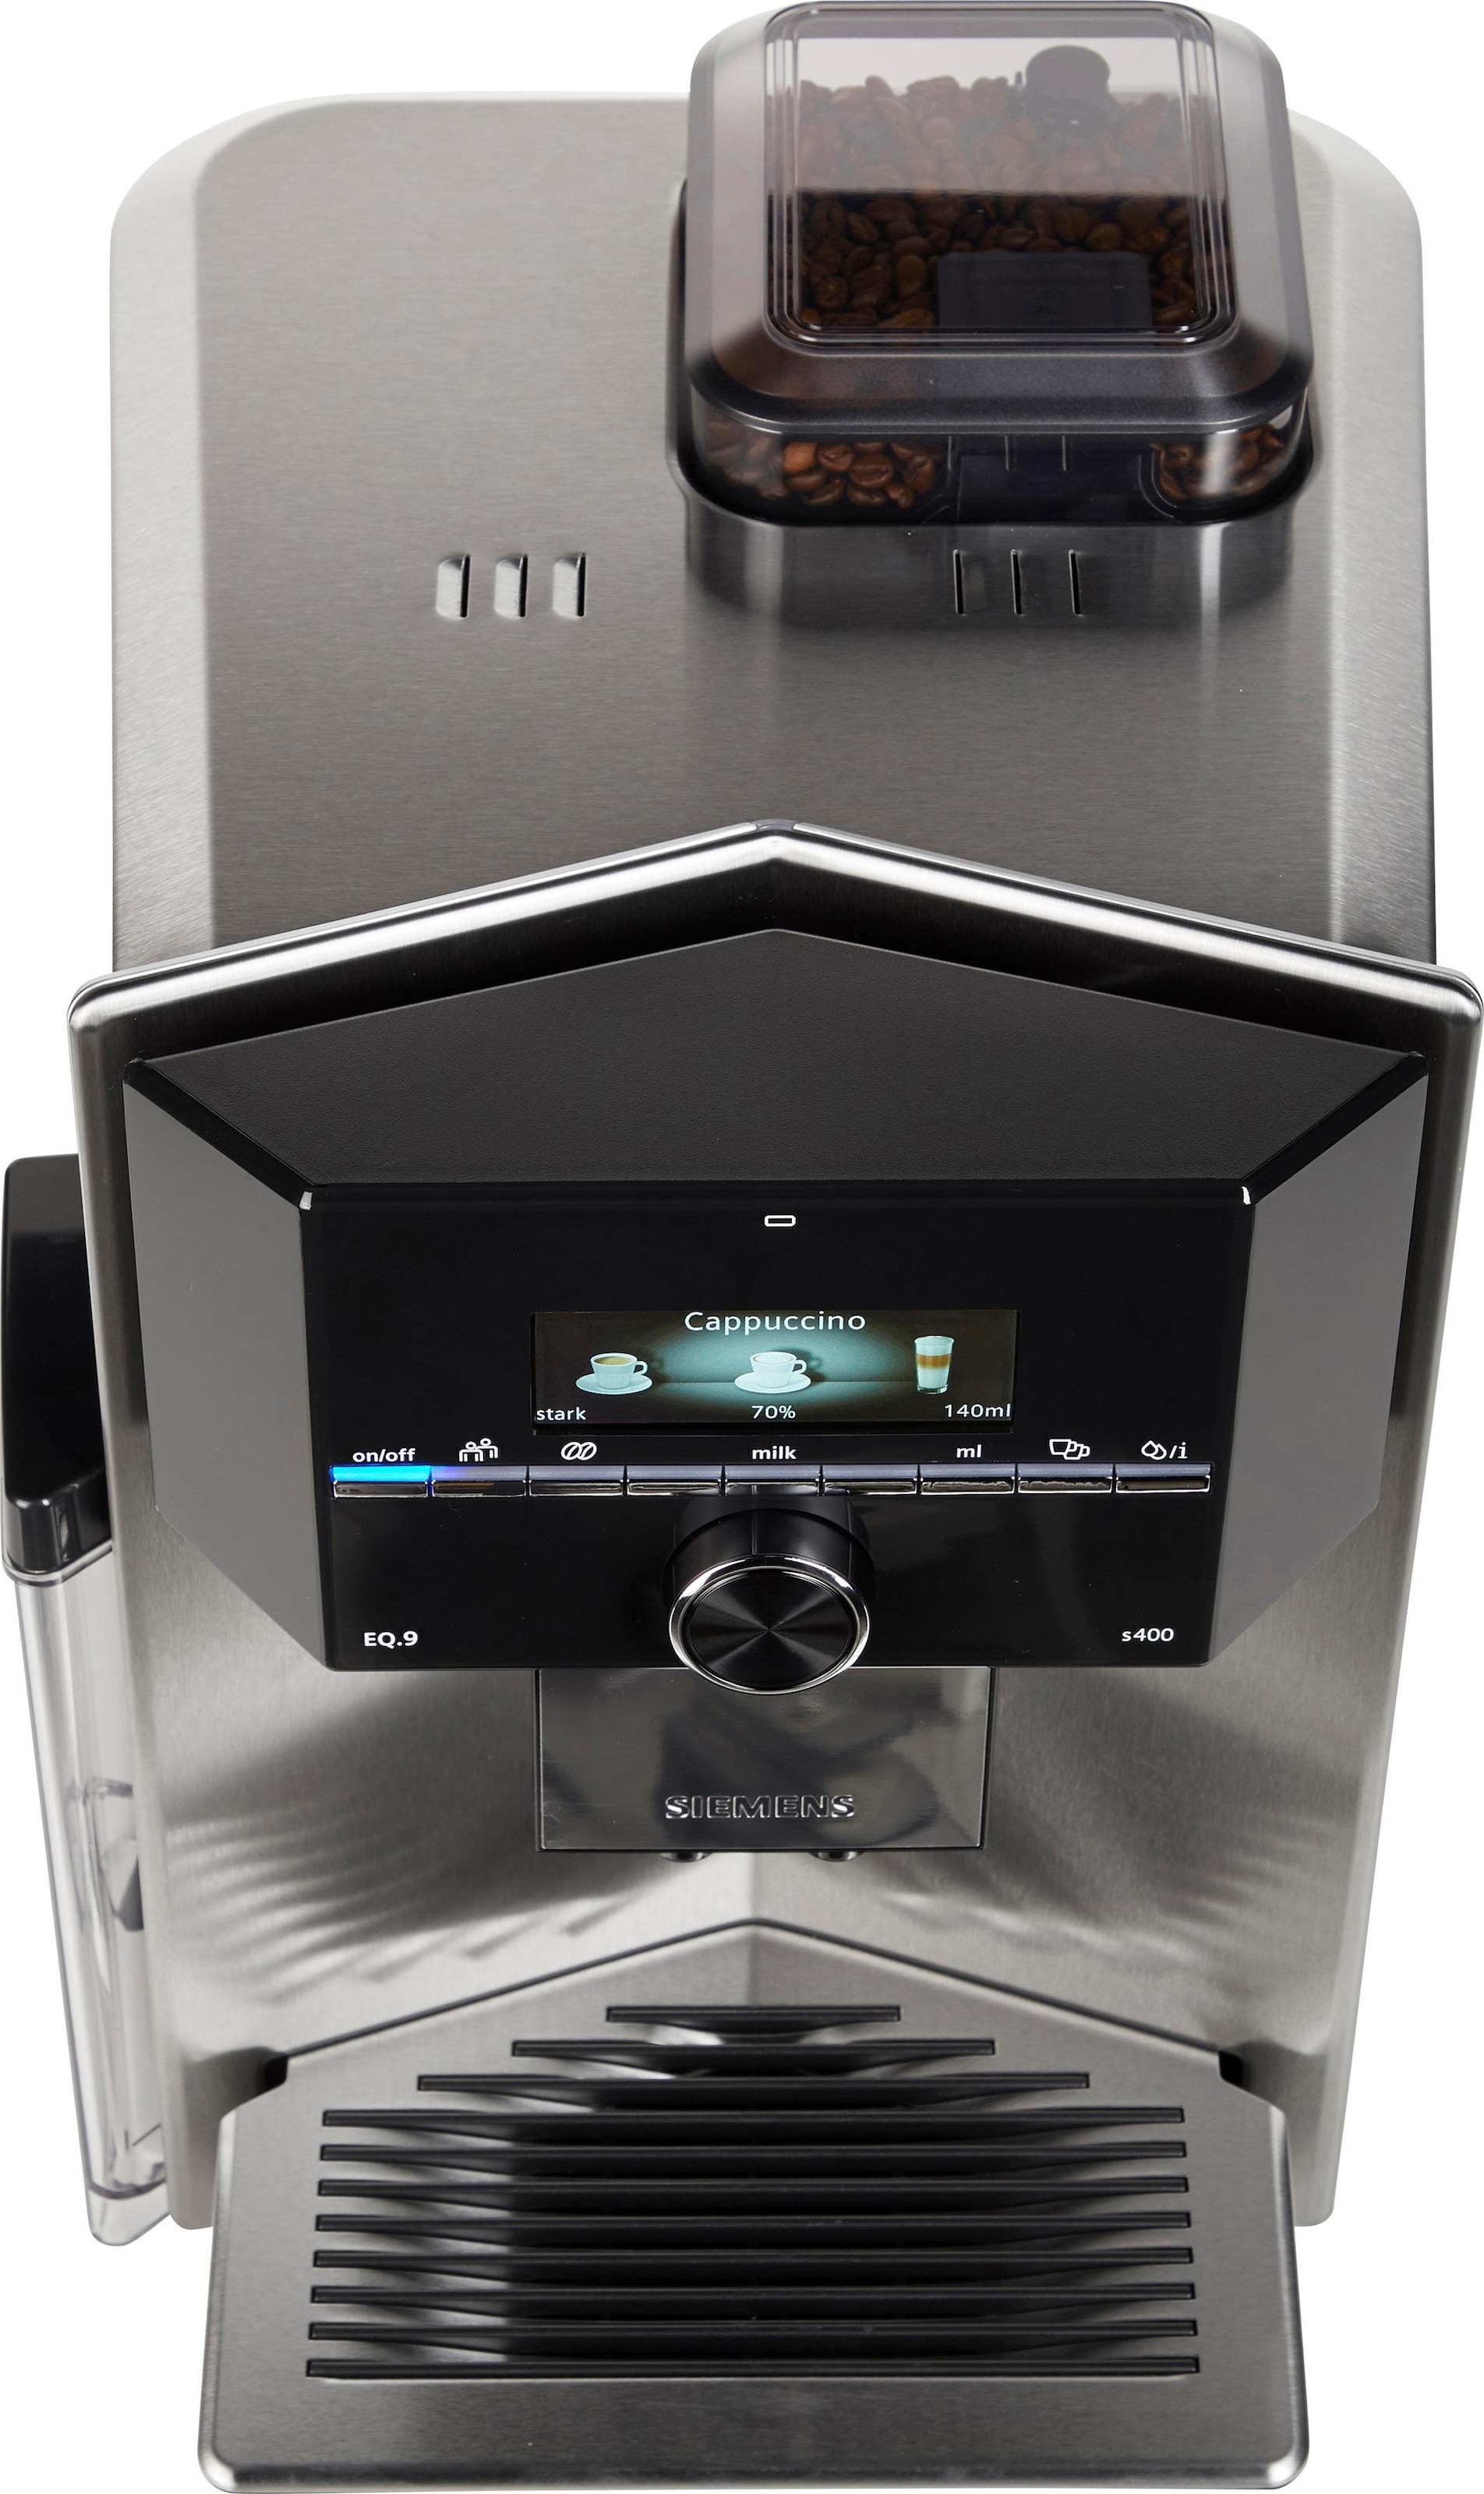 »EQ.9 Shop Profile Kaffeevollautomat bis automatische TI924501DE«, s400 Online OTTO im 6 extra SIEMENS Milchsystem-Reinigung, leise, zu